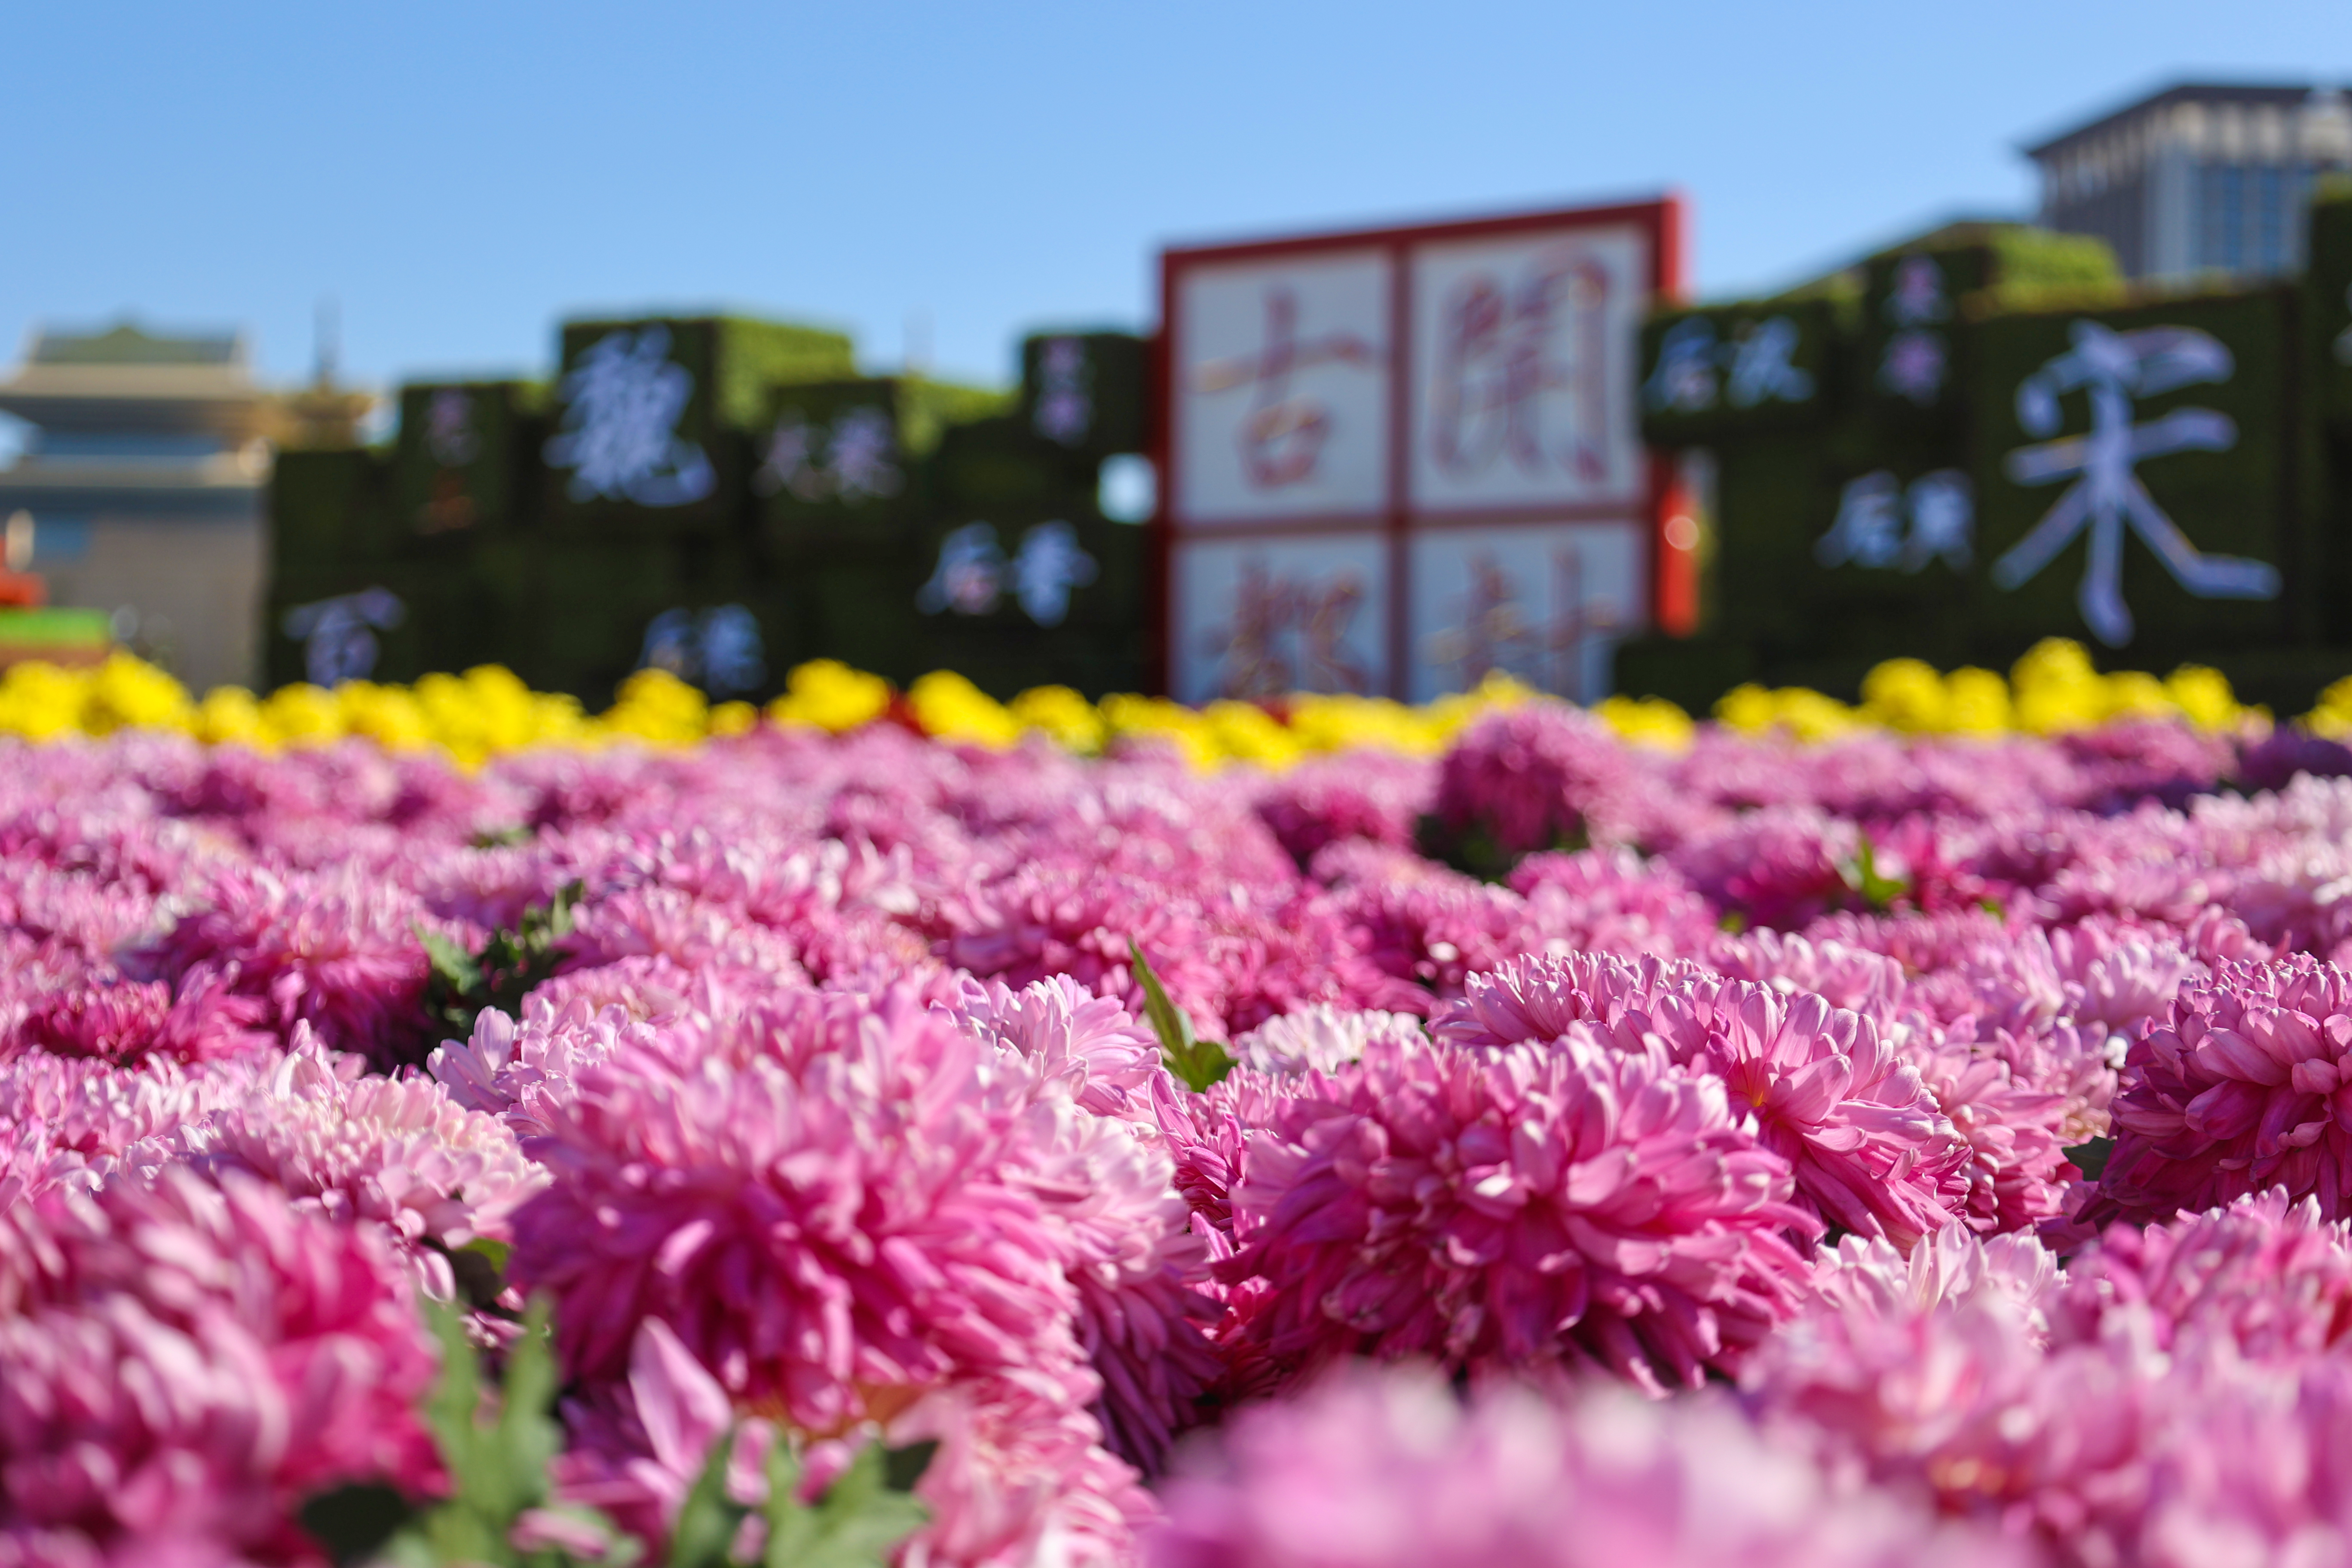 11月6日，古城天气晴朗，市民广场上朵朵菊花绽放，市民、游客前来欣赏菊花傲立之姿,或俯首静观花海绚烂，或与菊花合影，定格下美好的秋日风光。开封+记者 石斐 摄